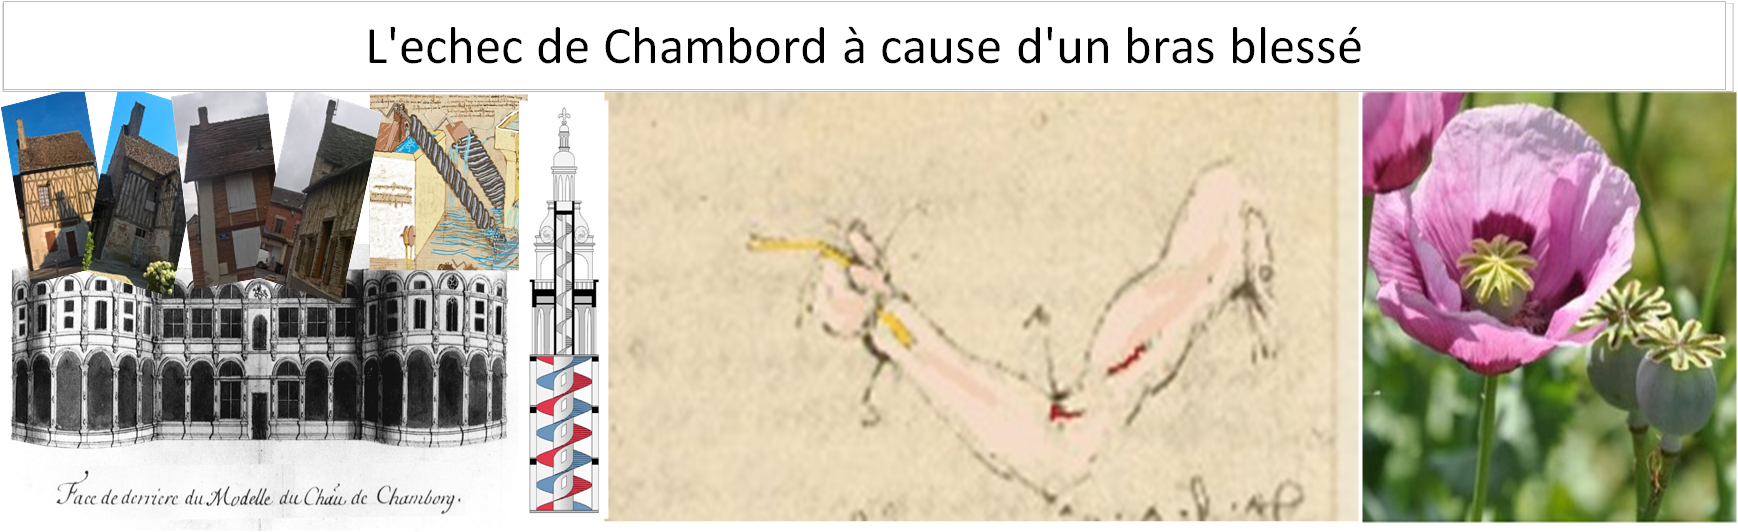 L'échec de Chambord à cause d'un bras blessé